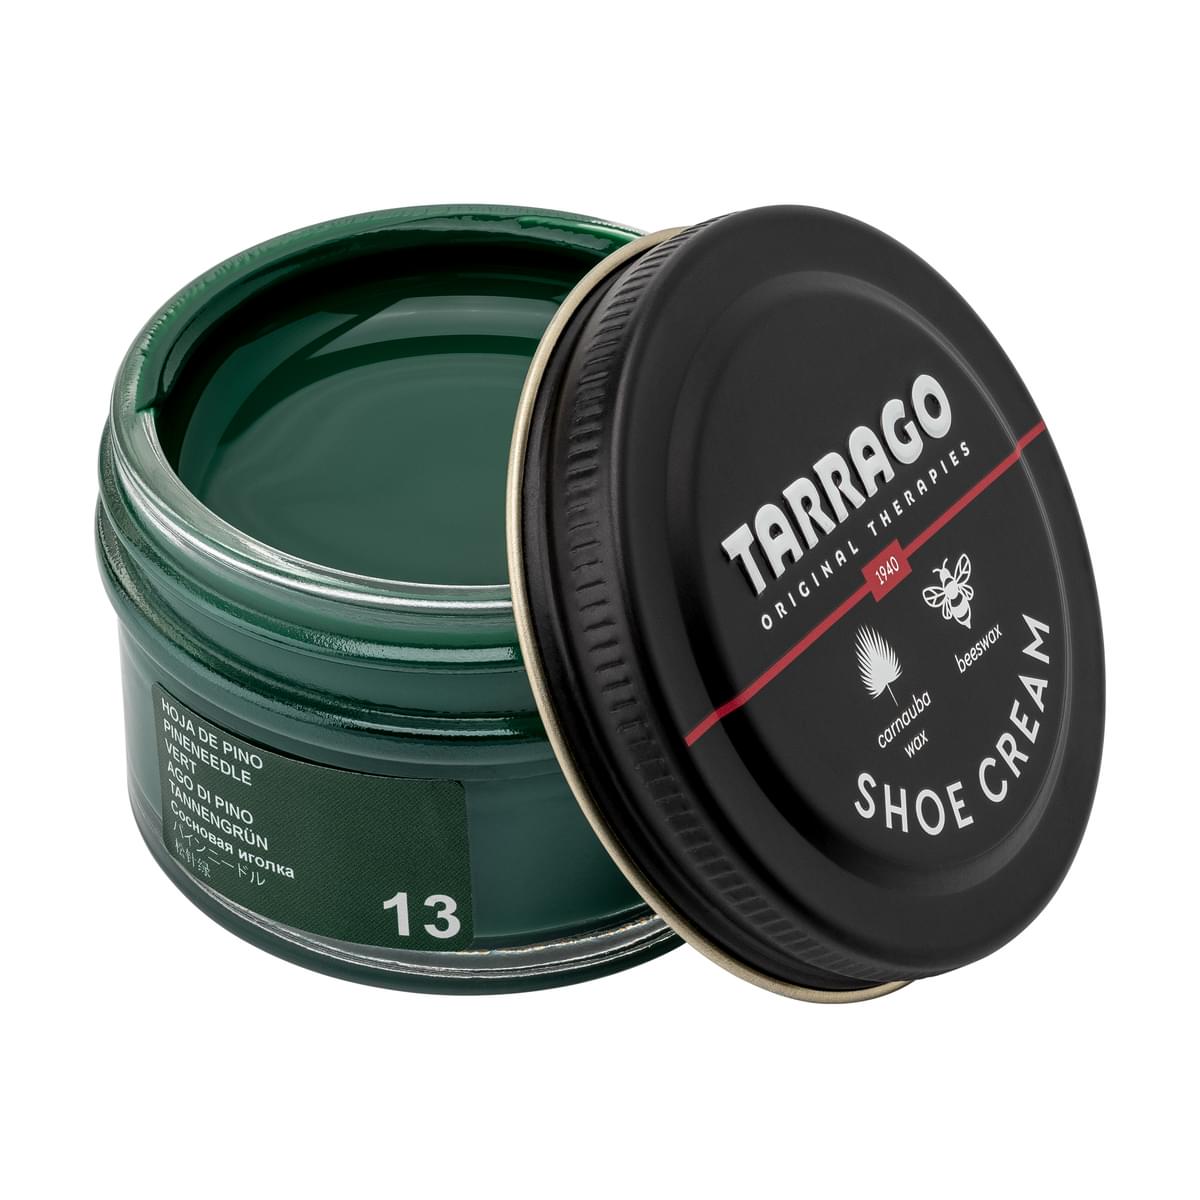 Tarrago Shoe Cream  - Pineneedle - 13